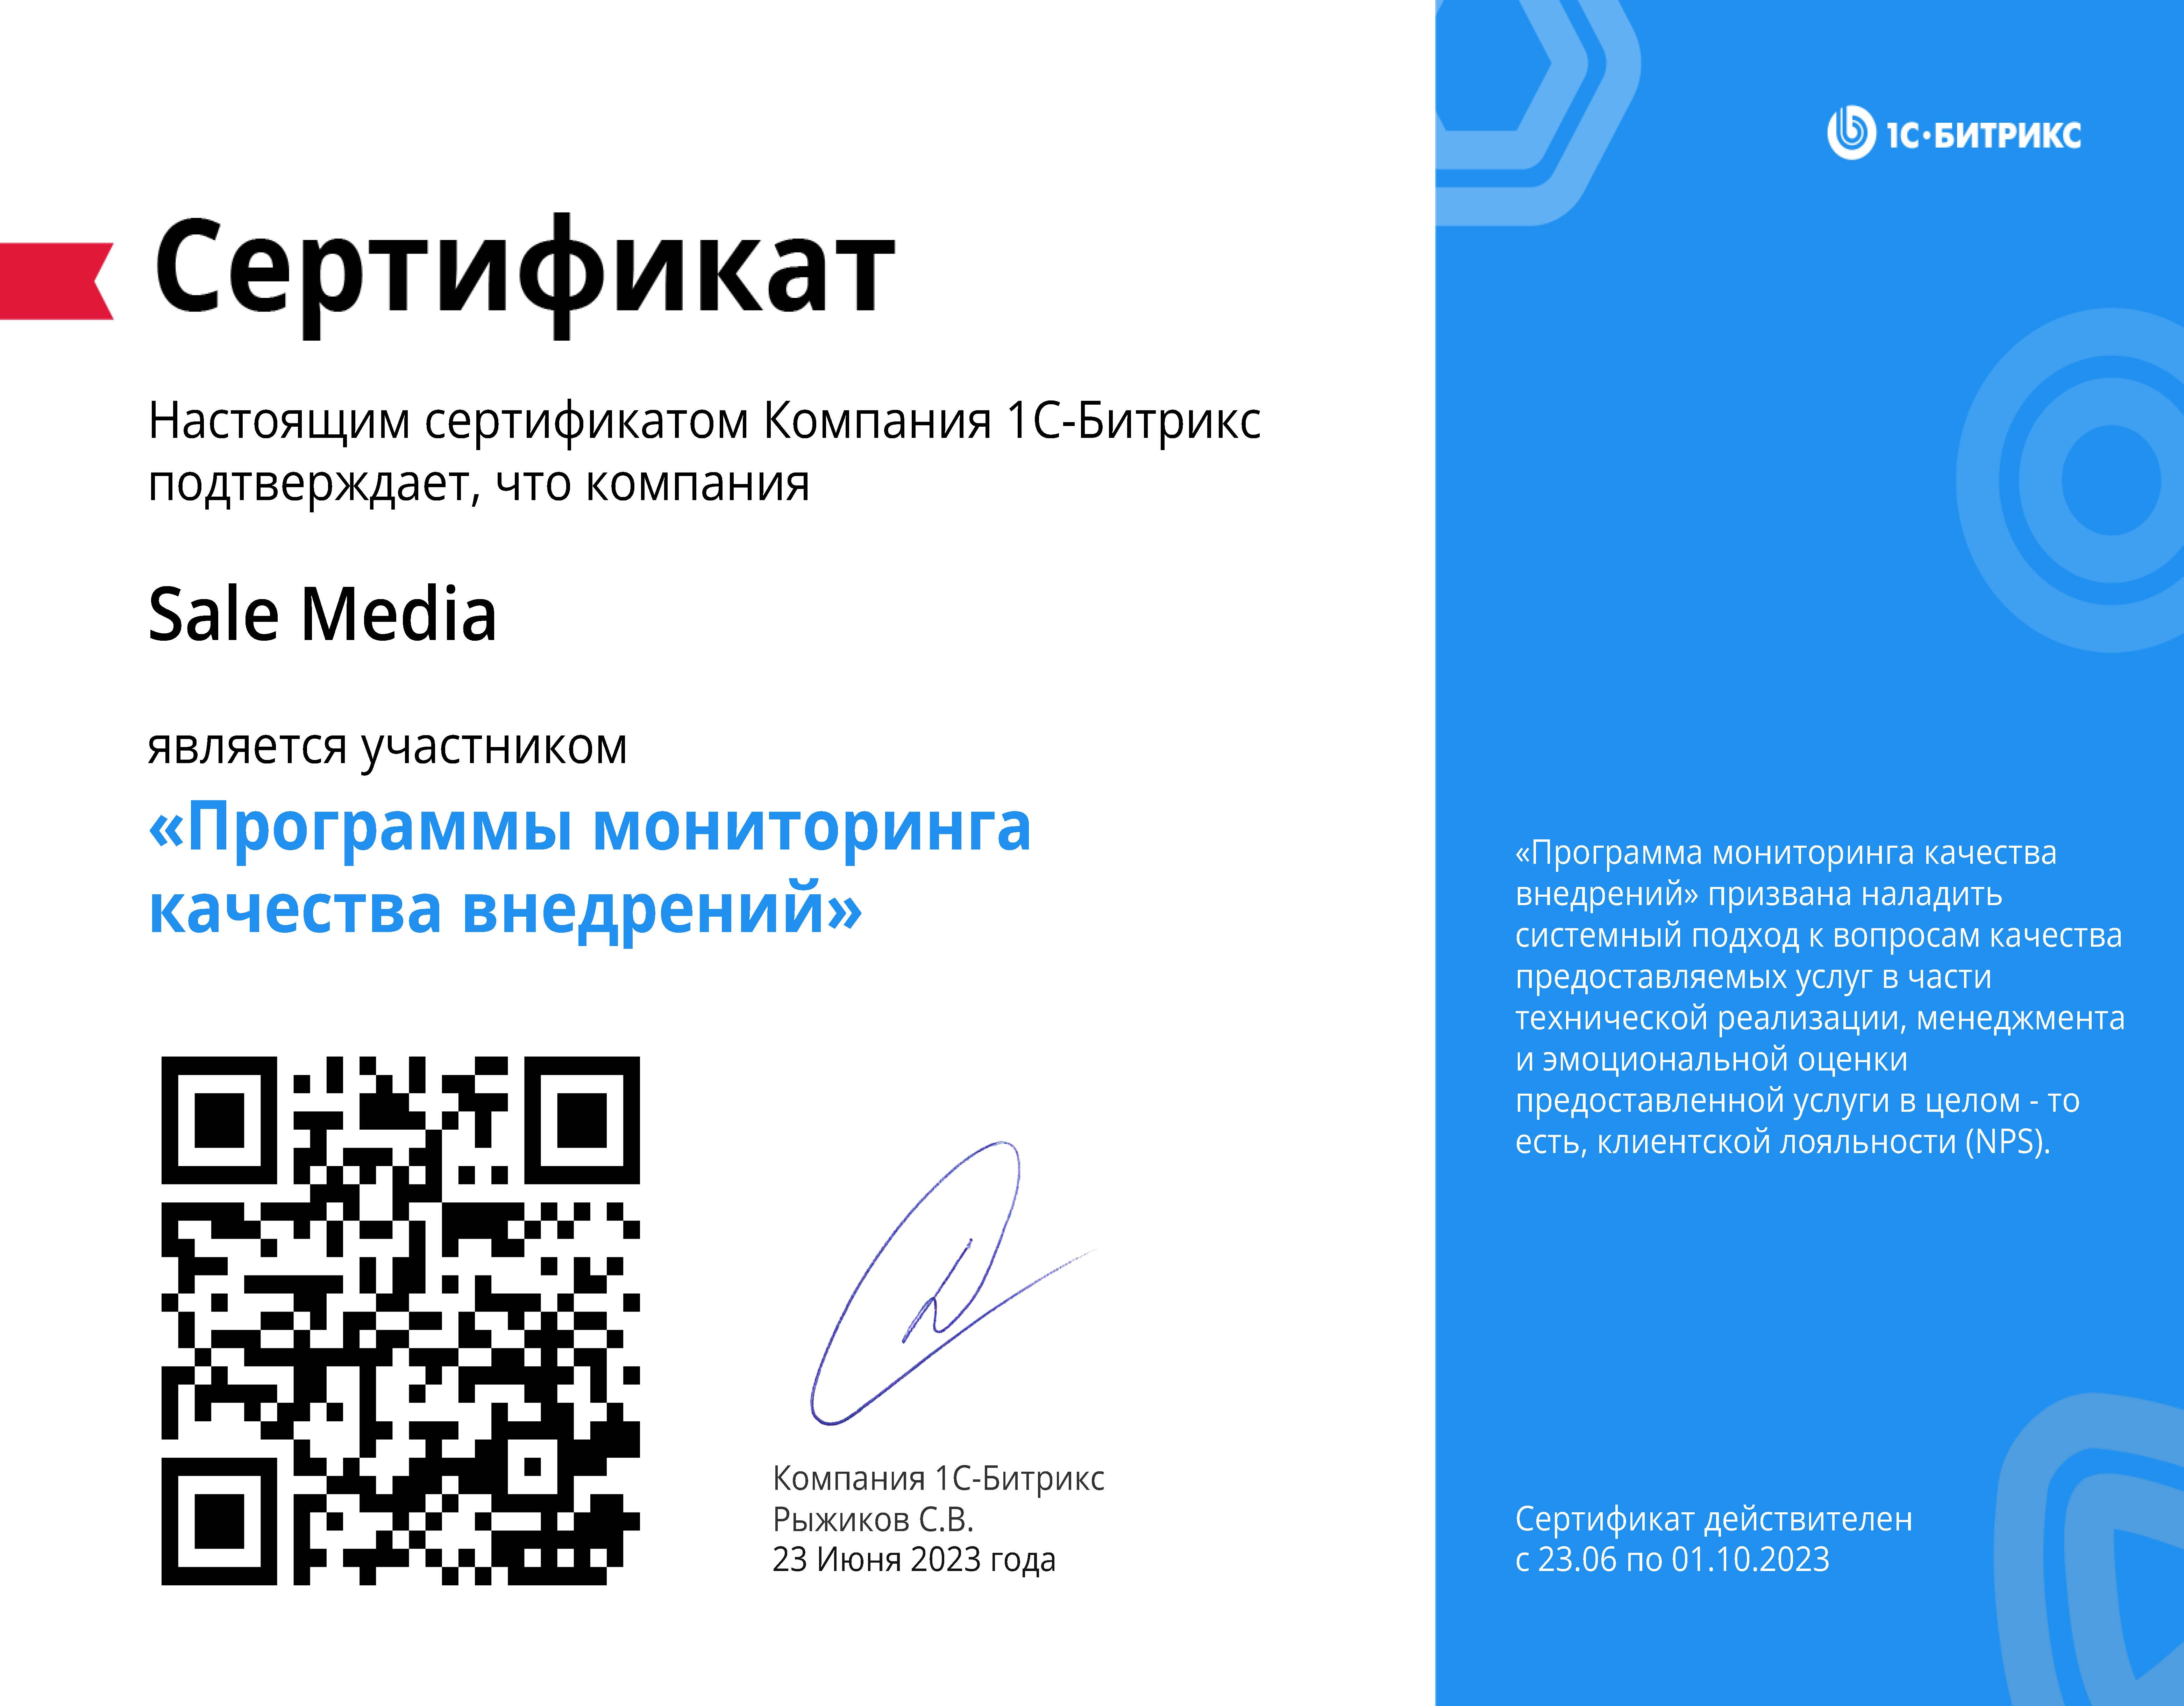 Сертификат Петров Сидоров